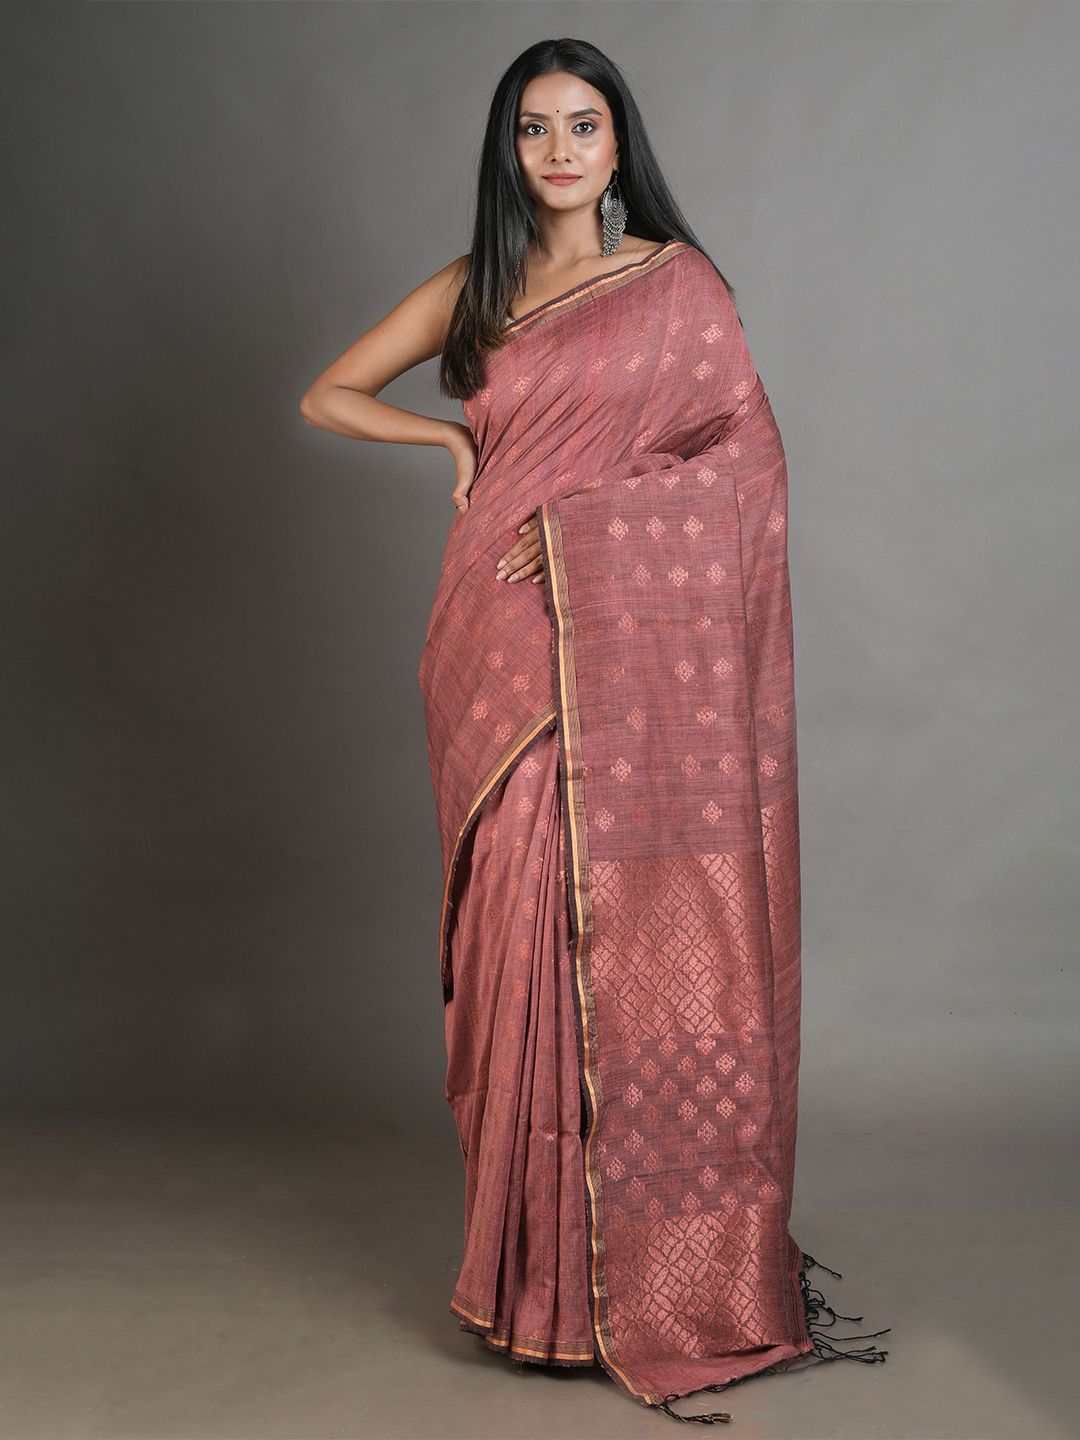 Arhi Brown & Copper-Toned Woven Design Zari Pure Linen Saree Price in India